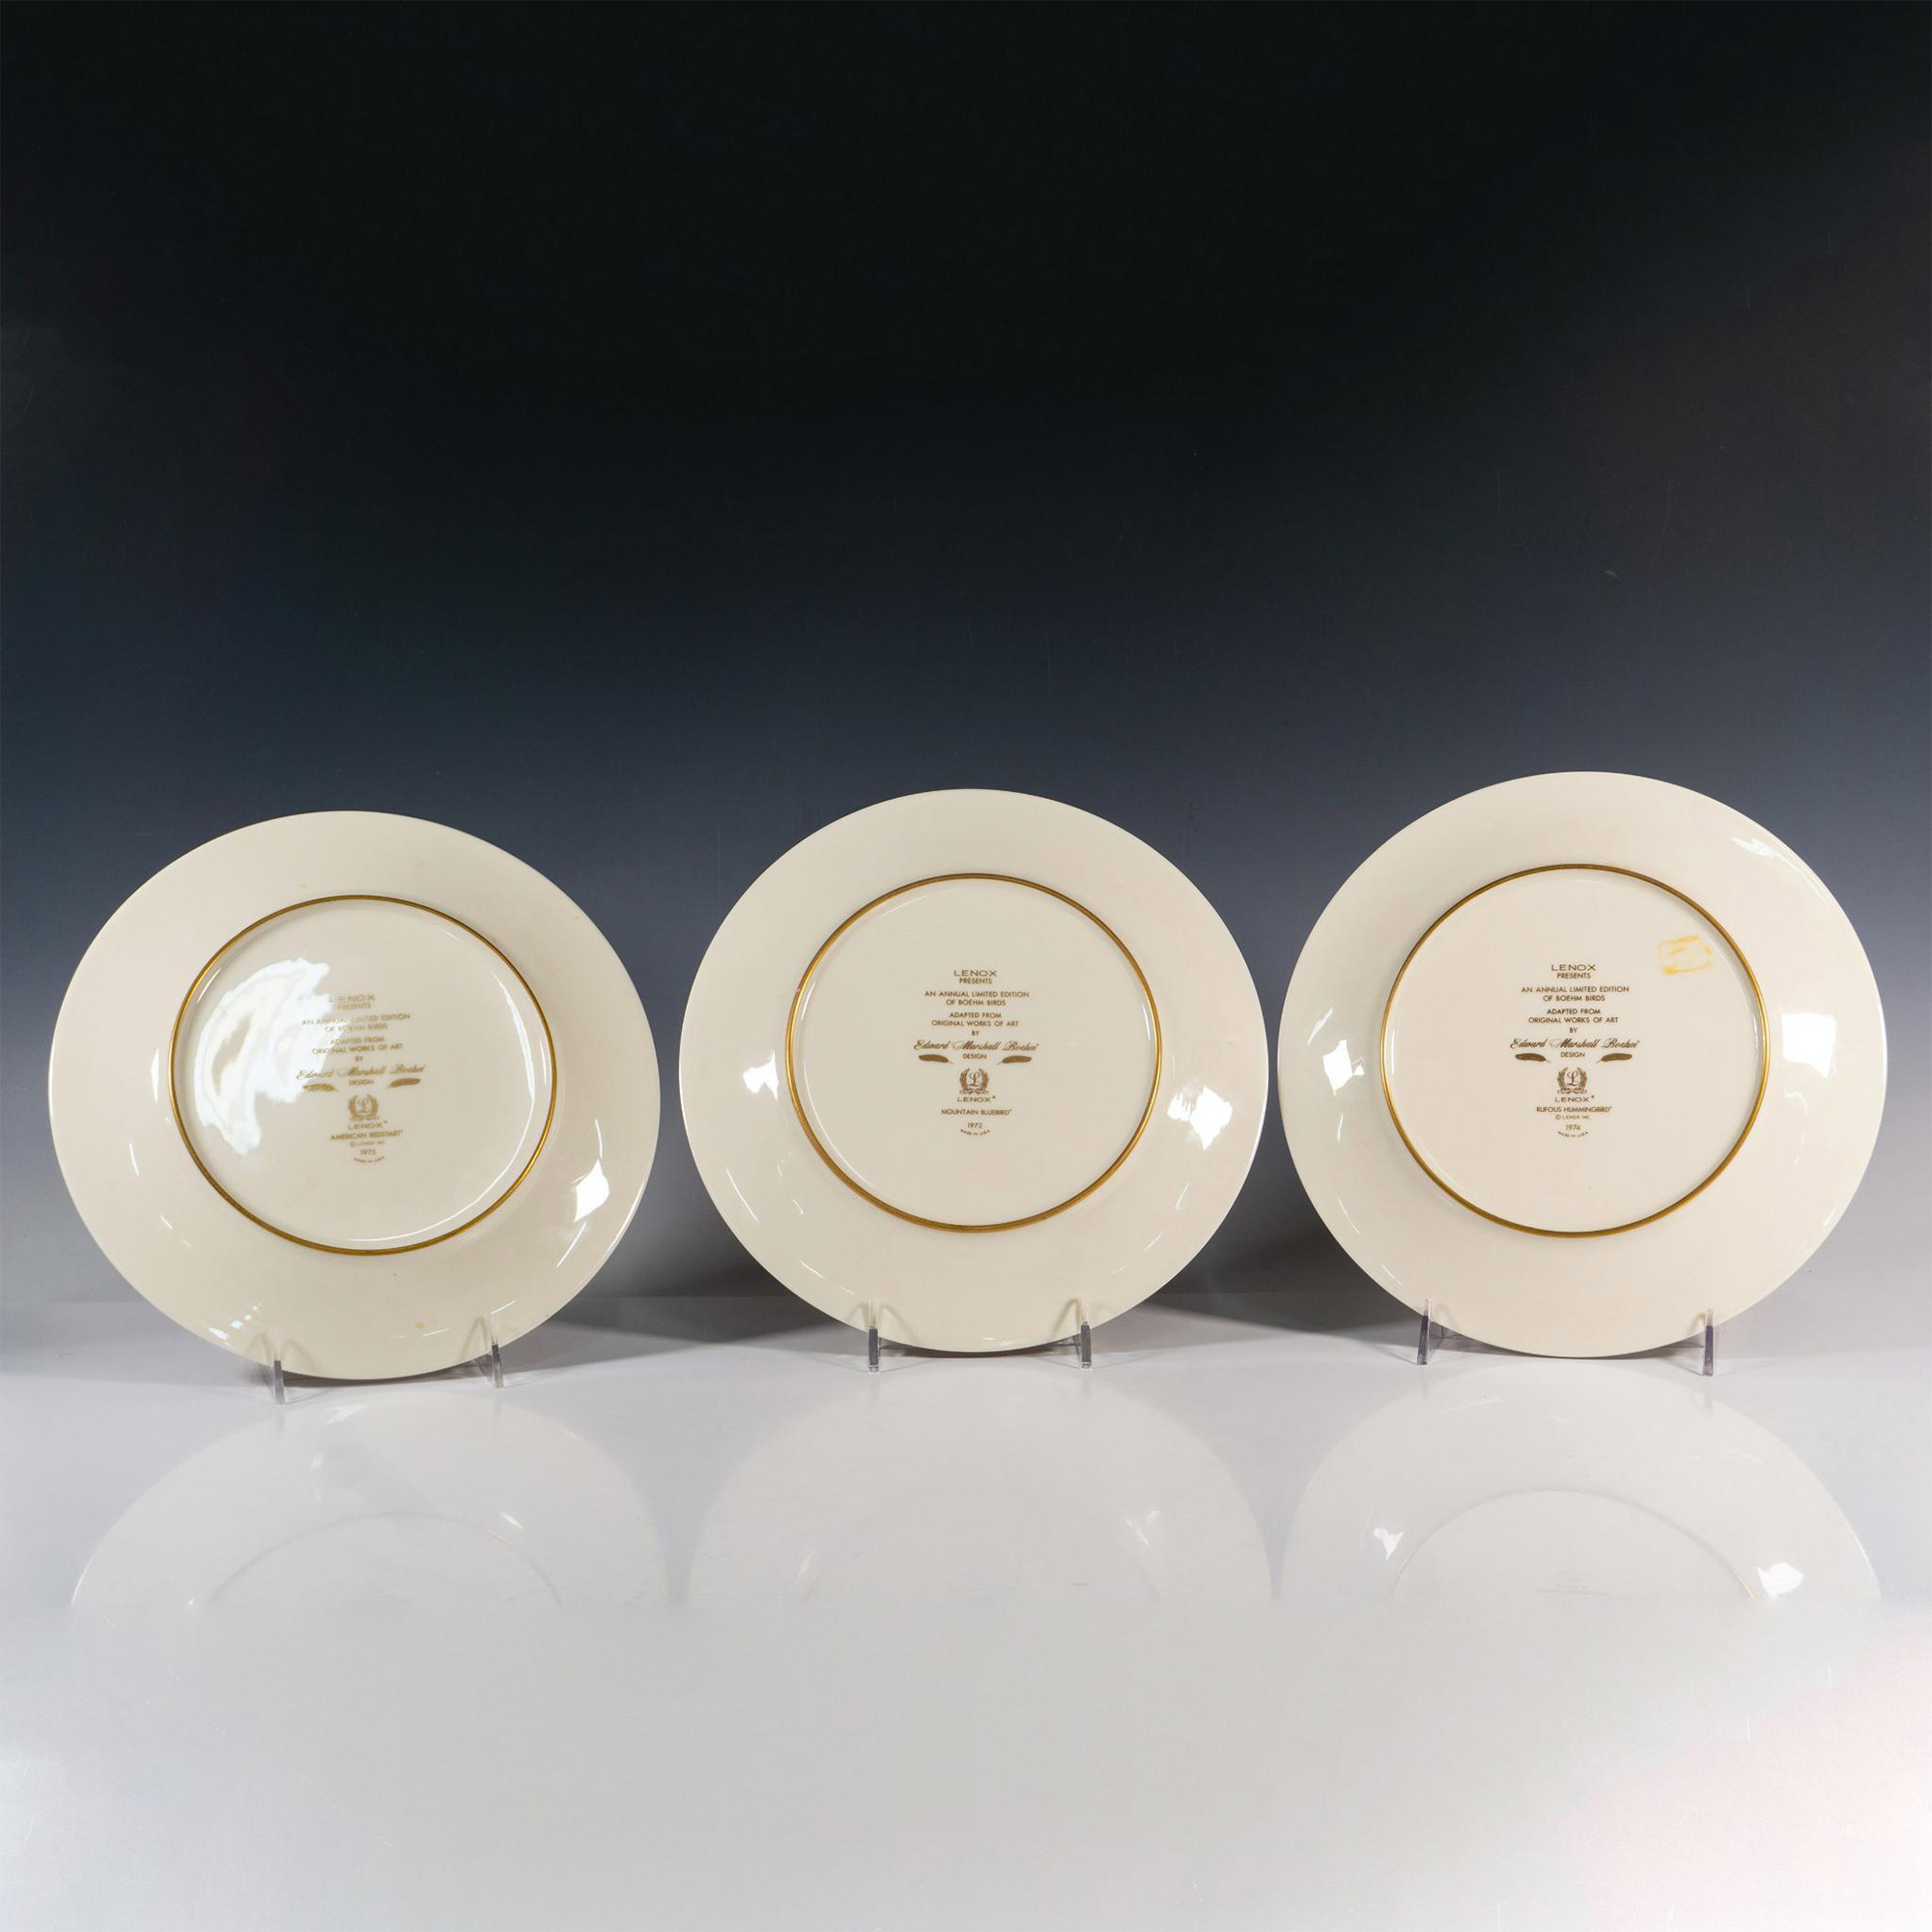 3pc Lenox Porcelain Limited Edition Plates, Boehm Birds - Image 2 of 4